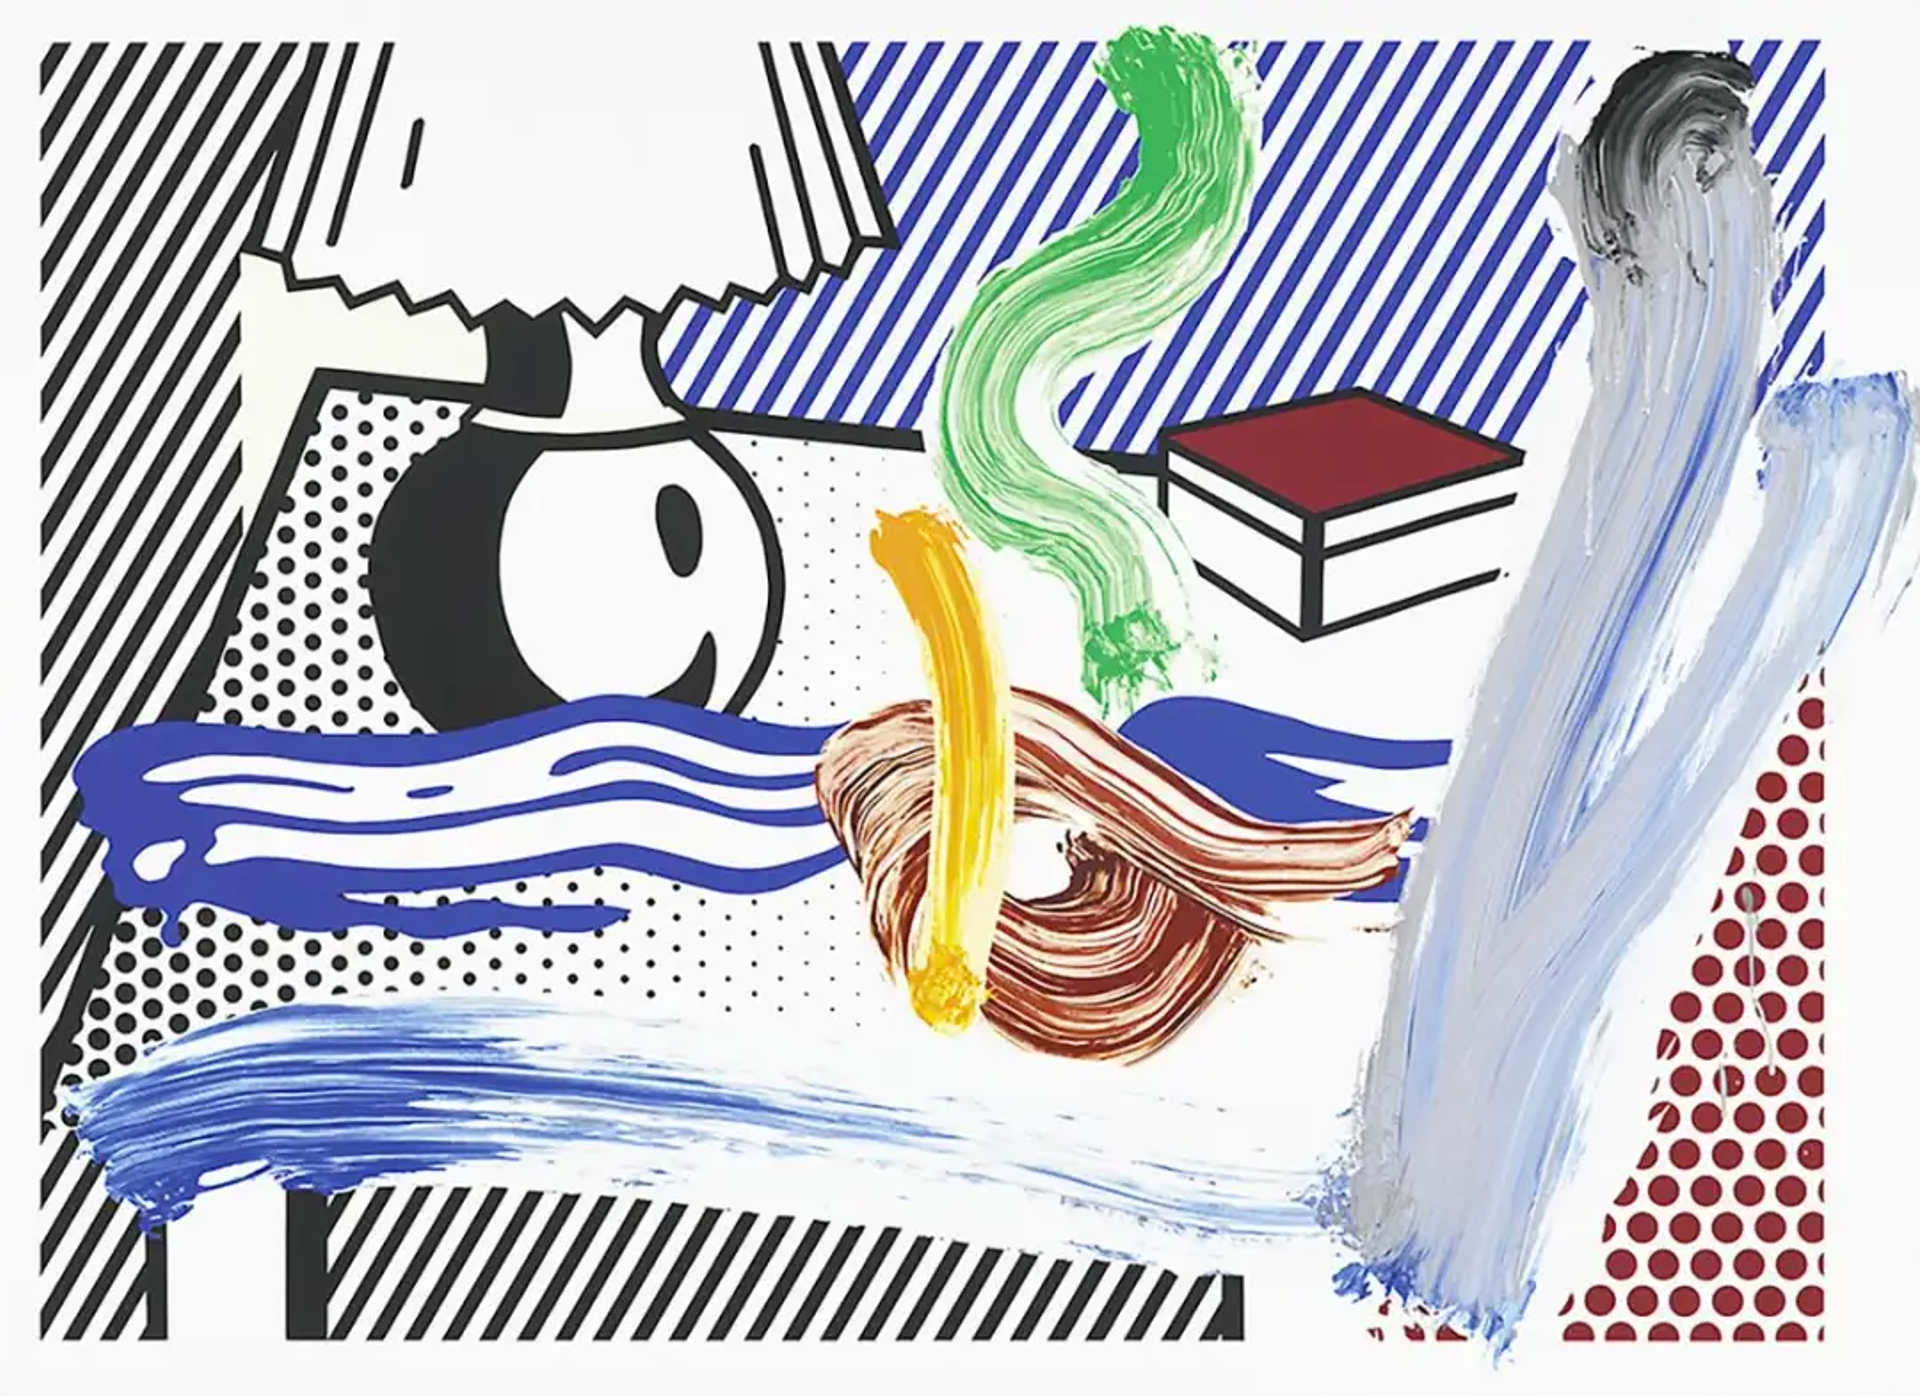 Roy Lichtenstein's Approach to Still Life